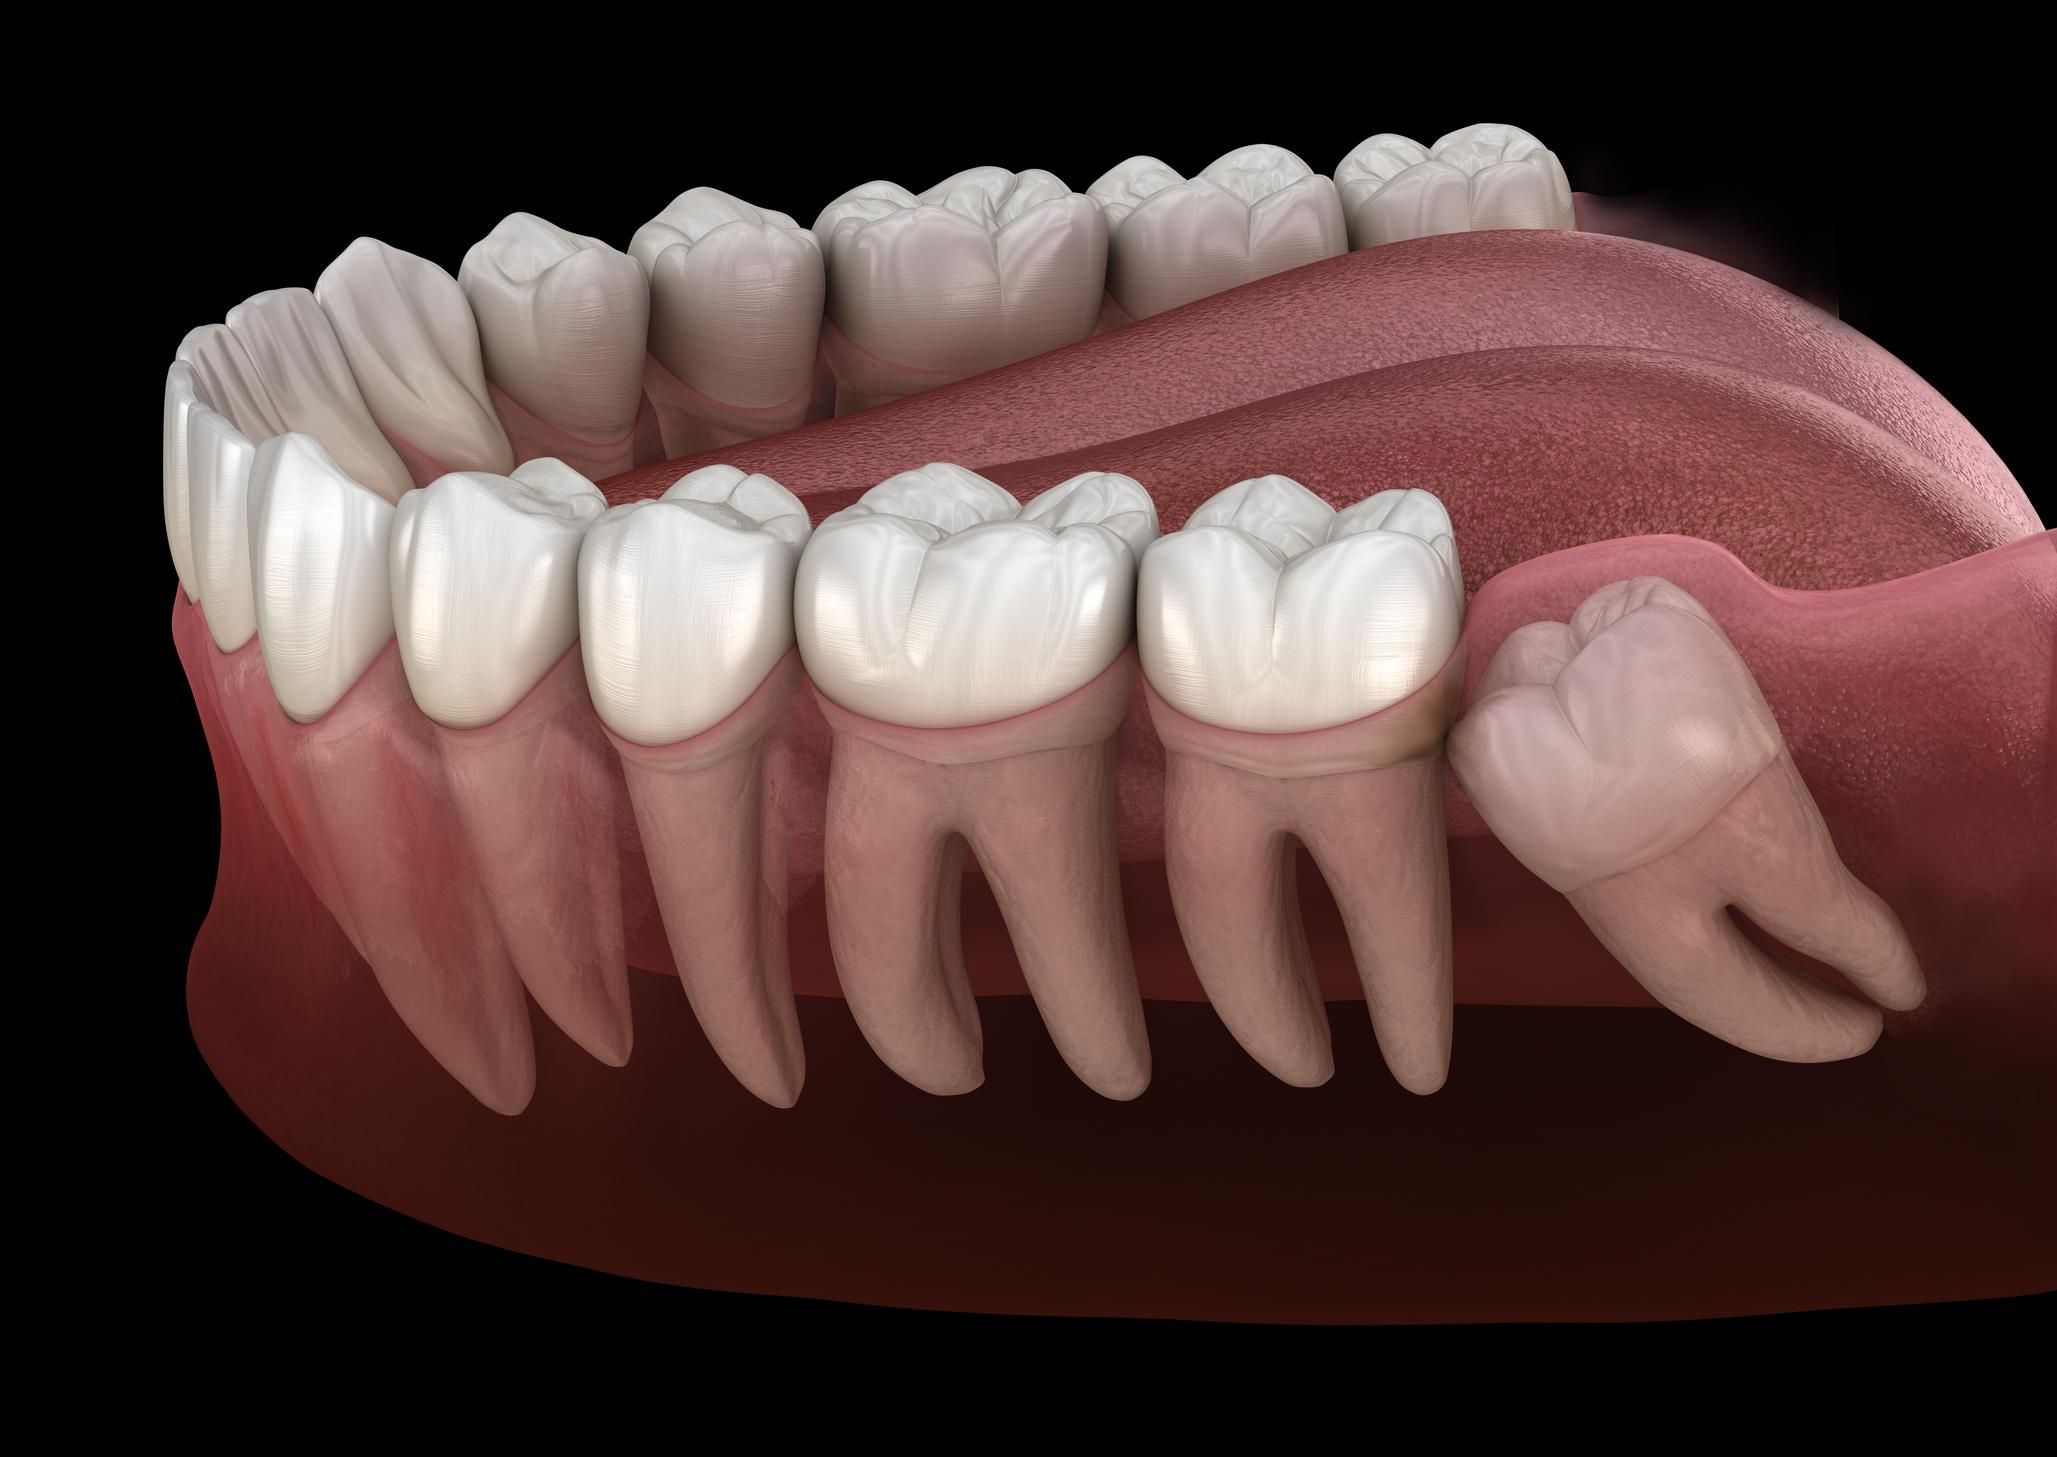 Зникають зуби мудрості і з'являється додаткова артерія: вчені виявили нову стадію еволюції